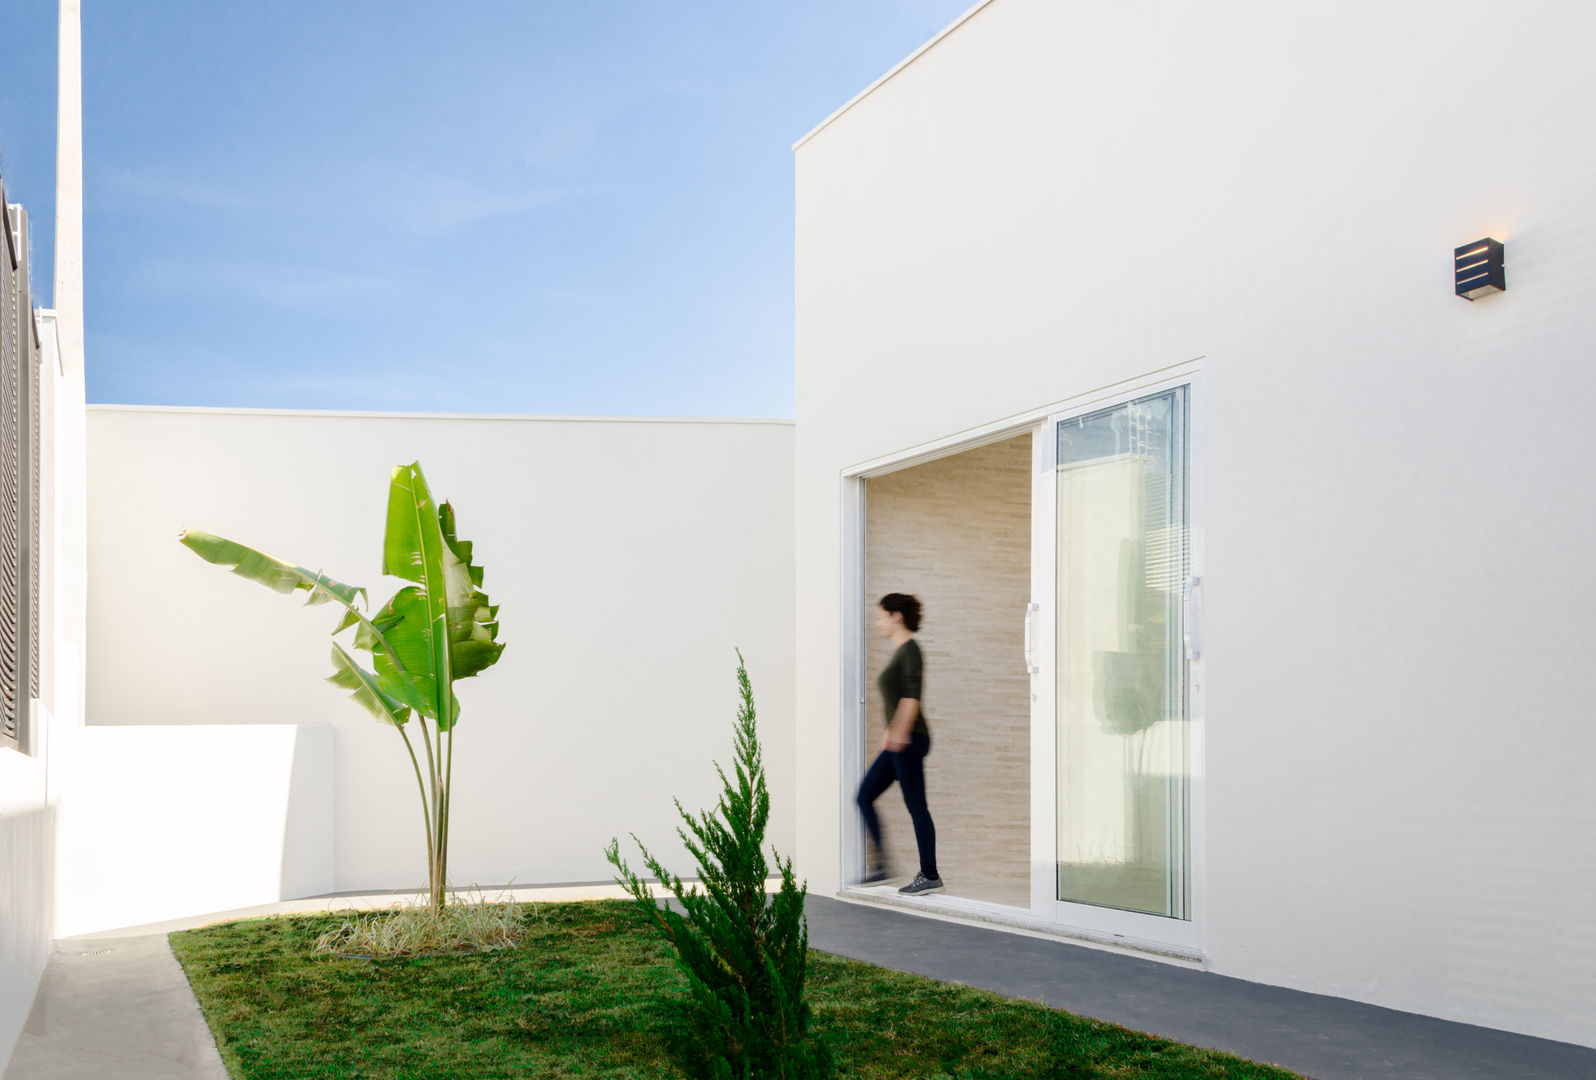 Jardín delantero Luciane Gesualdi | arquitectura y diseño Jardines frontales